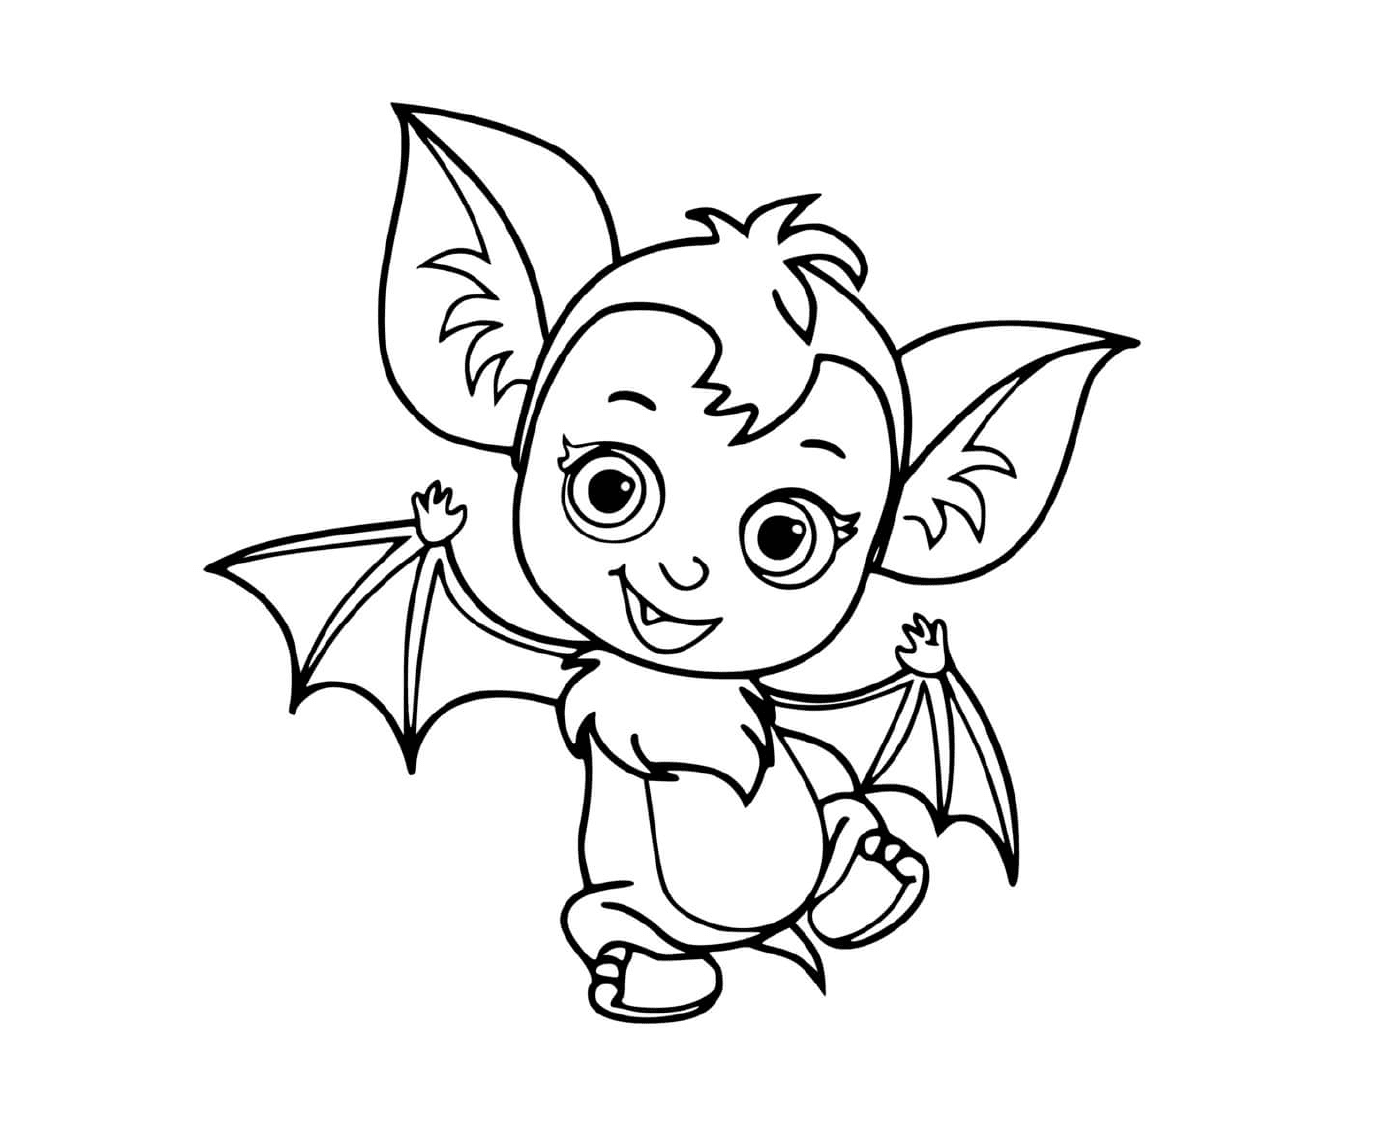  Vampirina morcego Veve, adorável bebezinho 